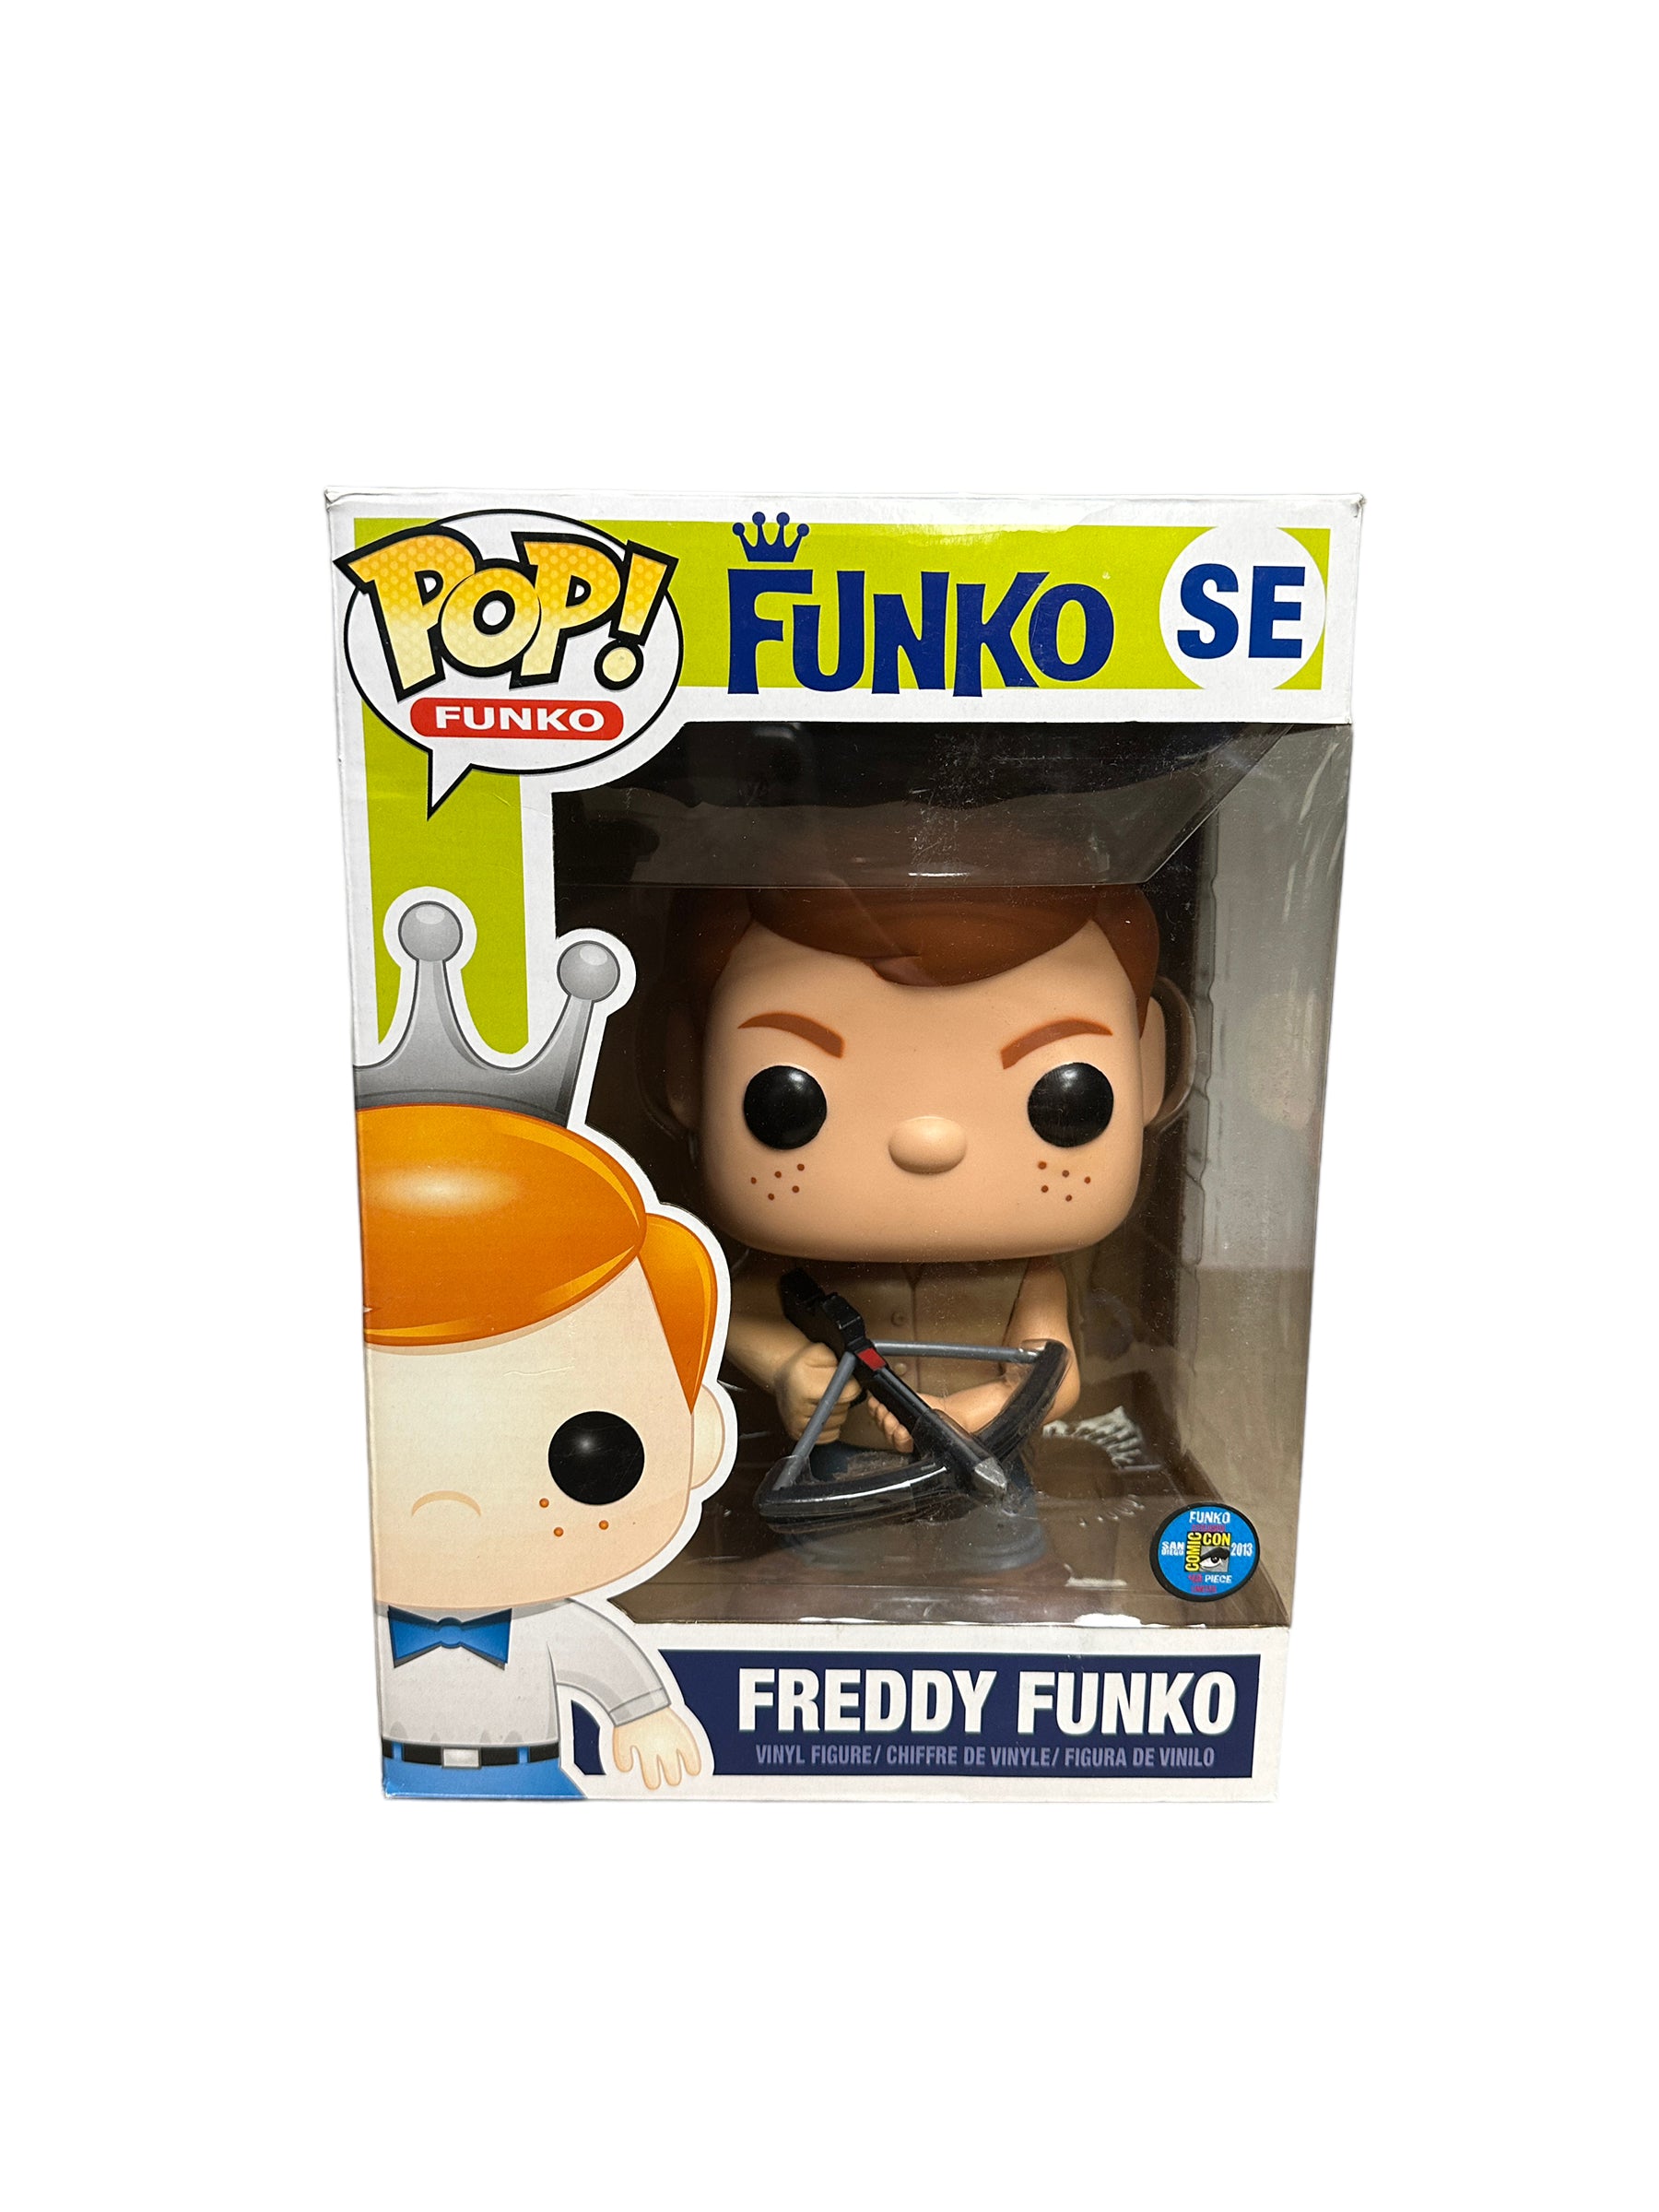 Freddy Funko as Daryl Dixon 9" Funko Pop! - SDCC 2013 Exclusive LE48 Pcs - Condition 7/10